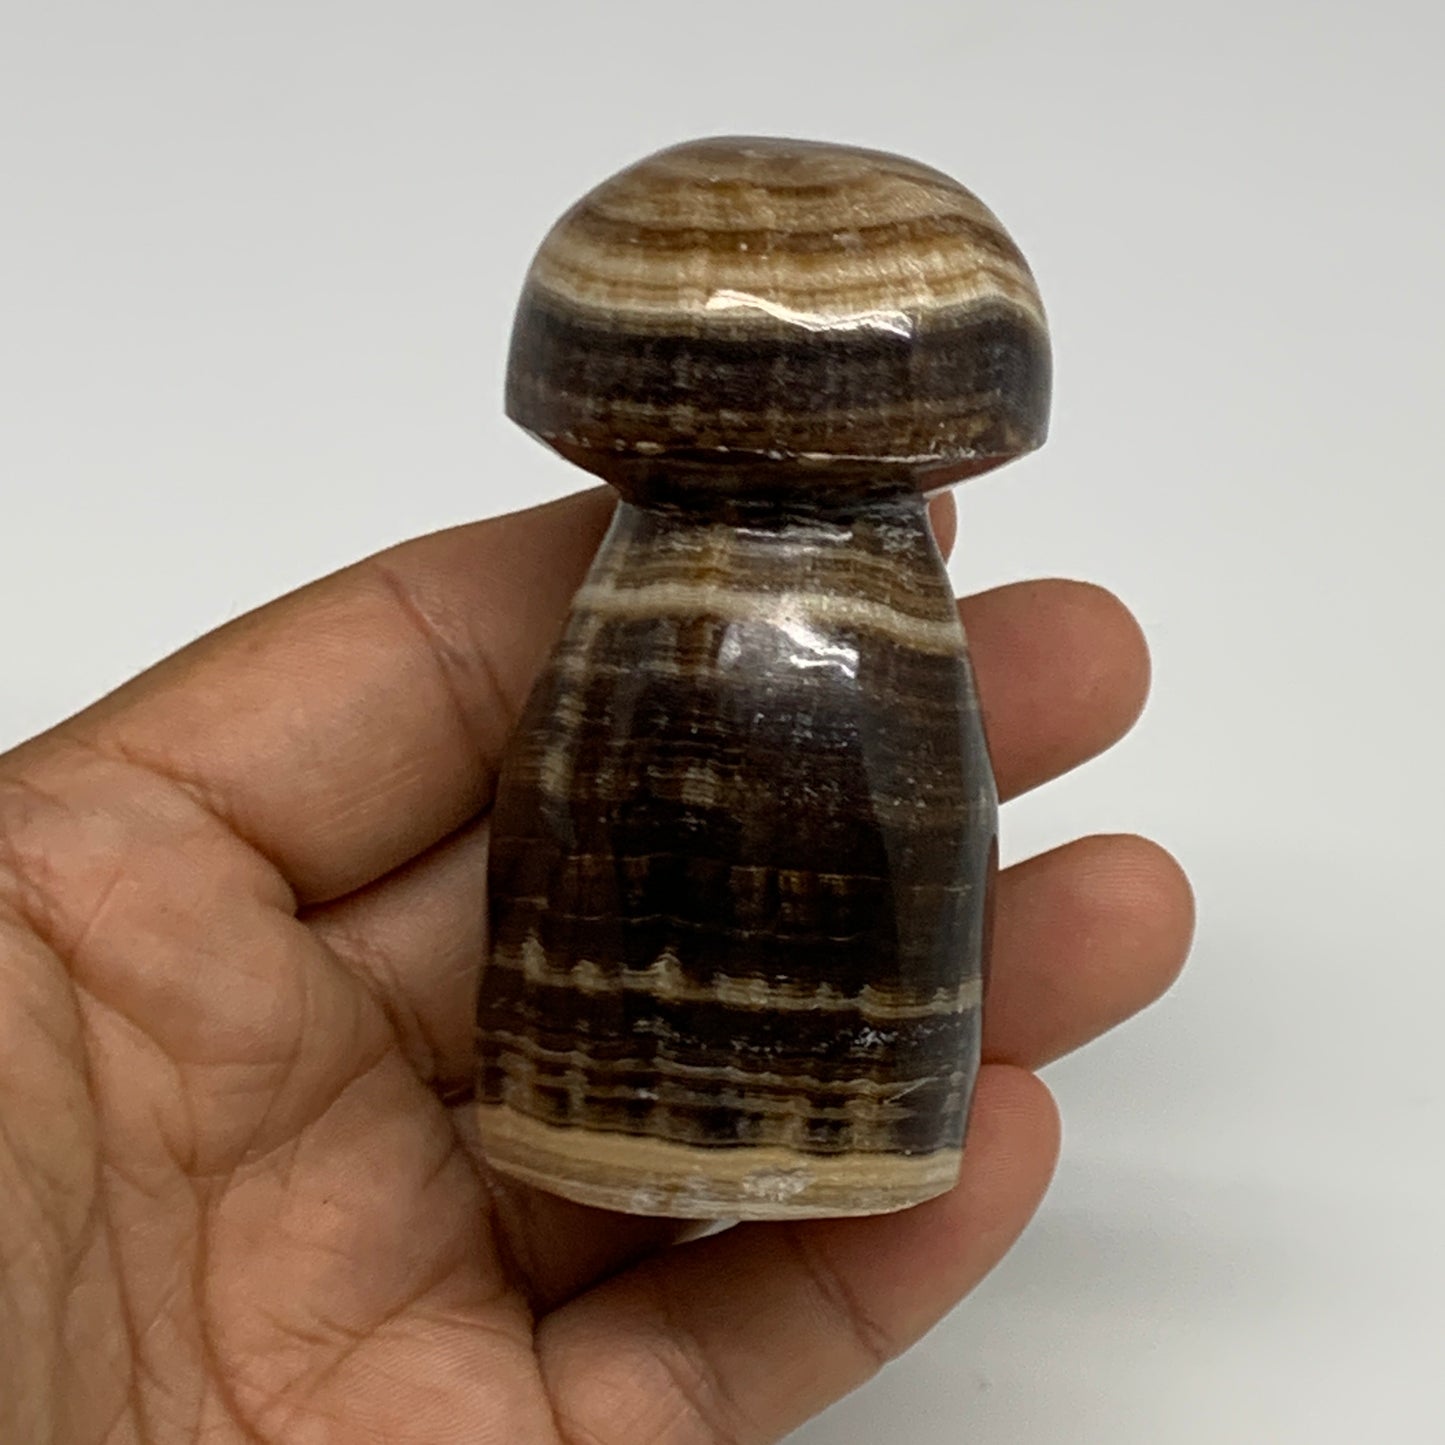 169.4g, 2.9"x1.4" Natural Chocolate Calcite Mushroom Gemstone @Pakistan, B30163